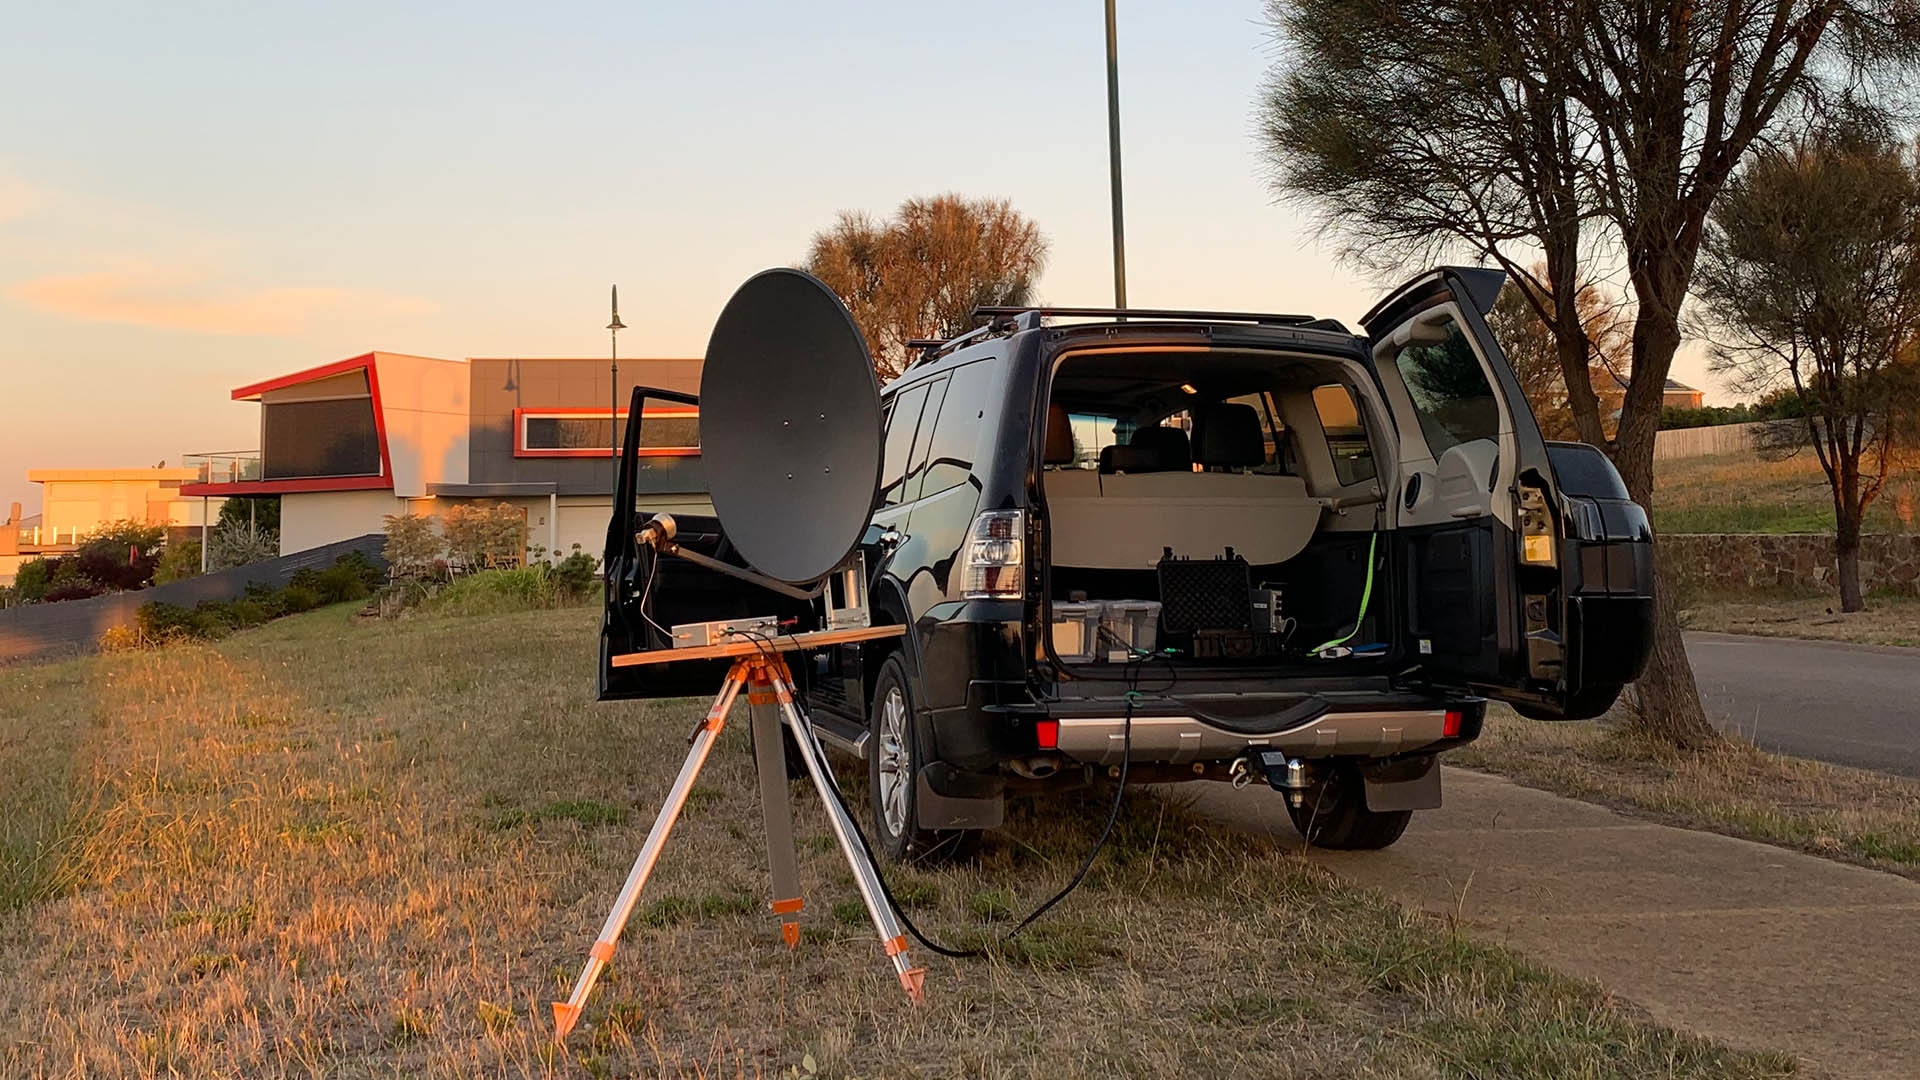 10 GHz Amateur Radio